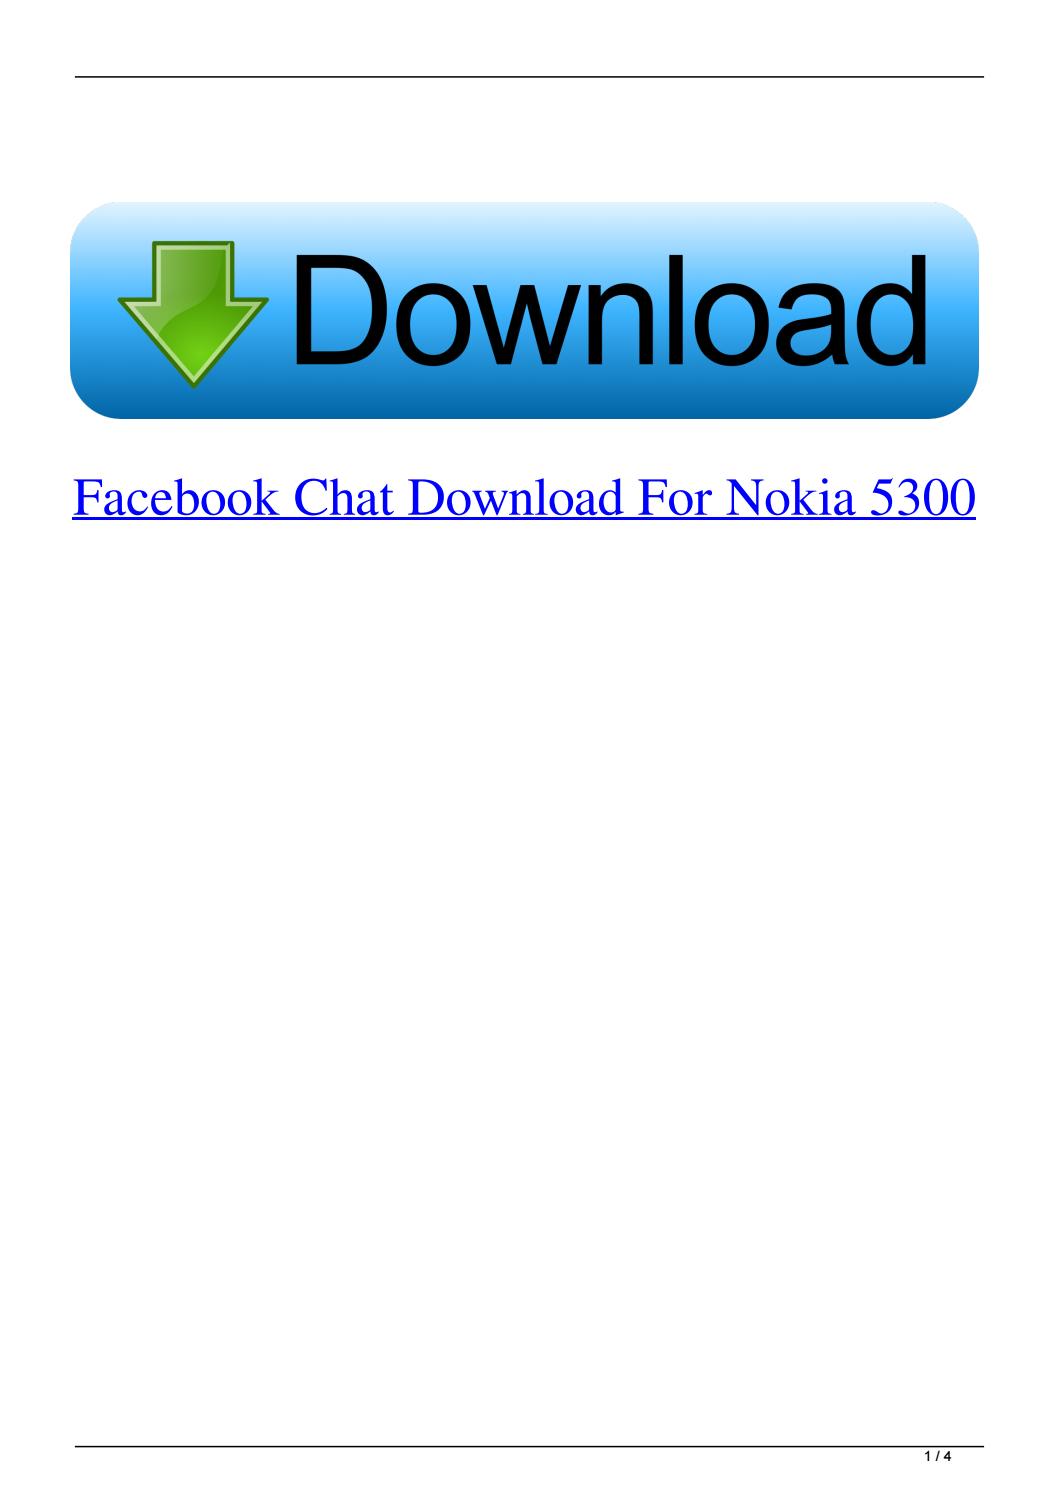 Nokia 114 Facebook App Download